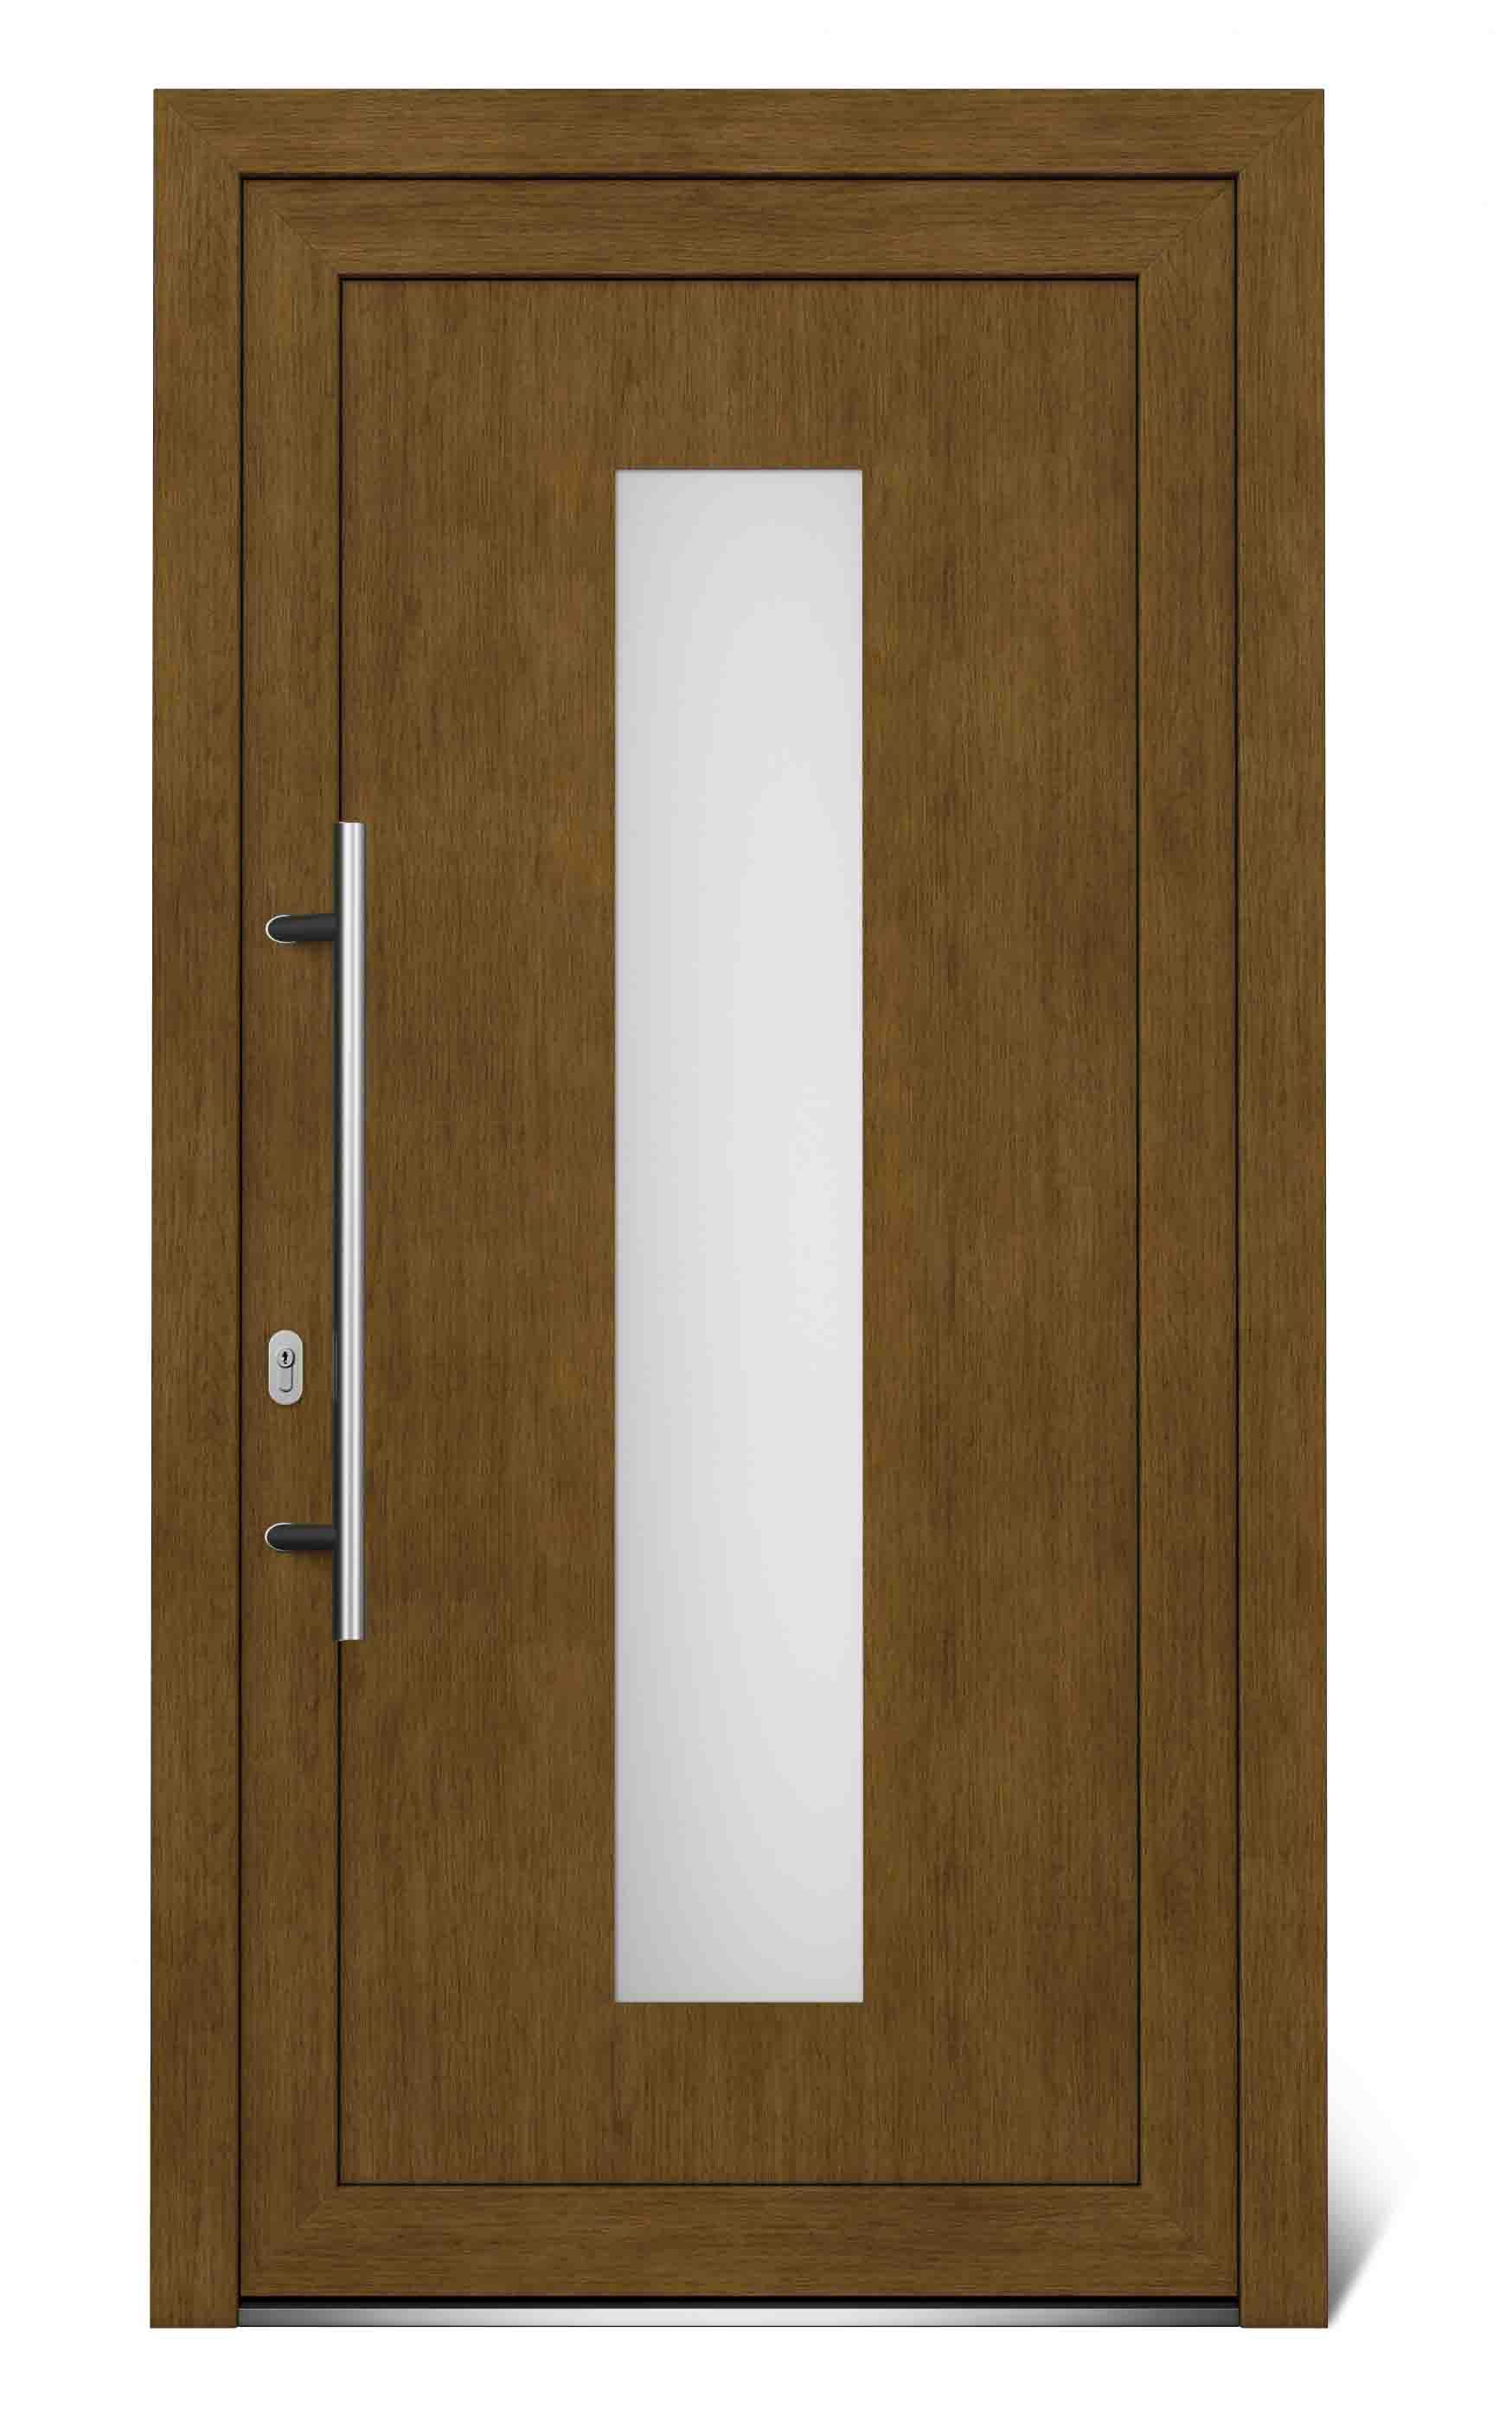 SKLADOVE-OKNA.sk Hlavné vchodové dvere EkoLine lavé, 1044 x 2020 mm, biela / zlatý dub